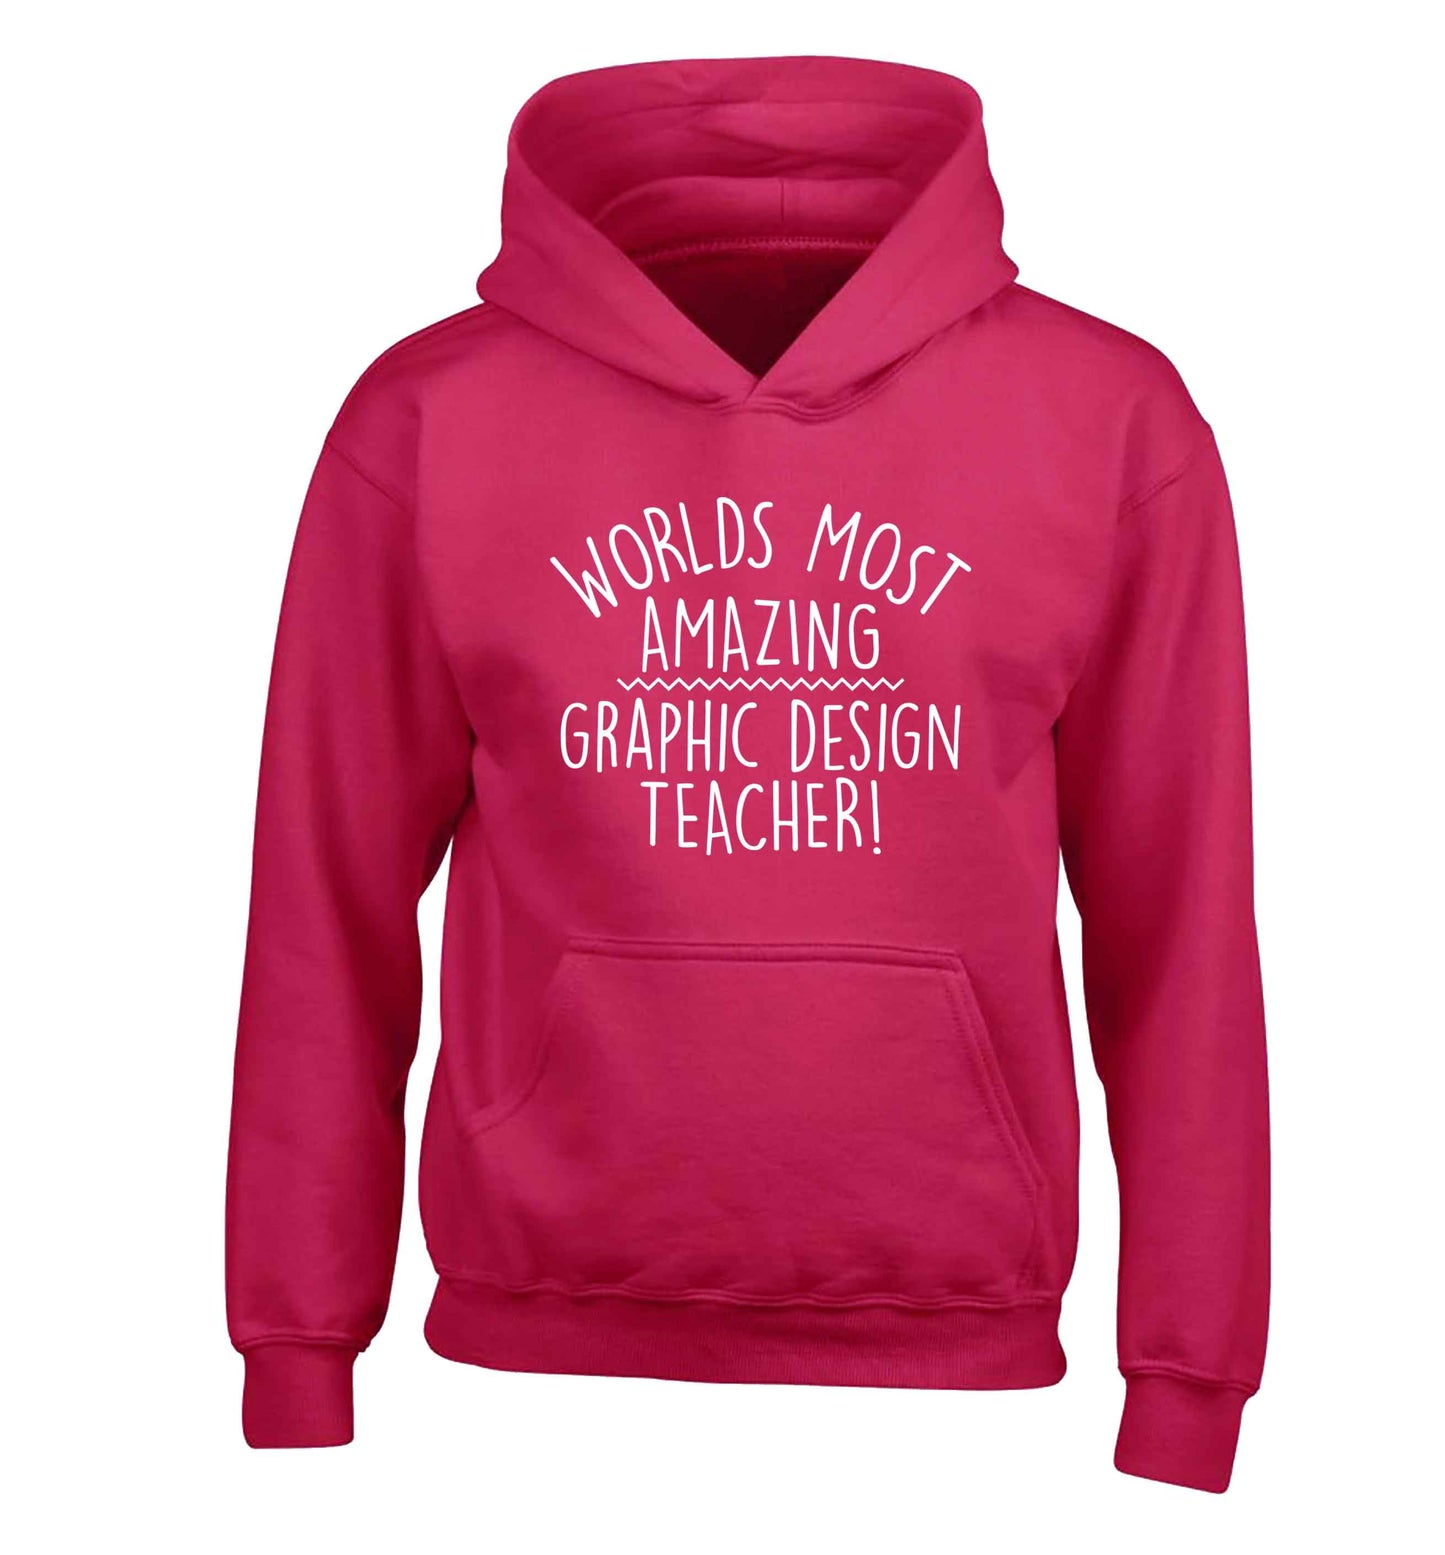 Worlds most amazing graphic design teacher children's pink hoodie 12-13 Years